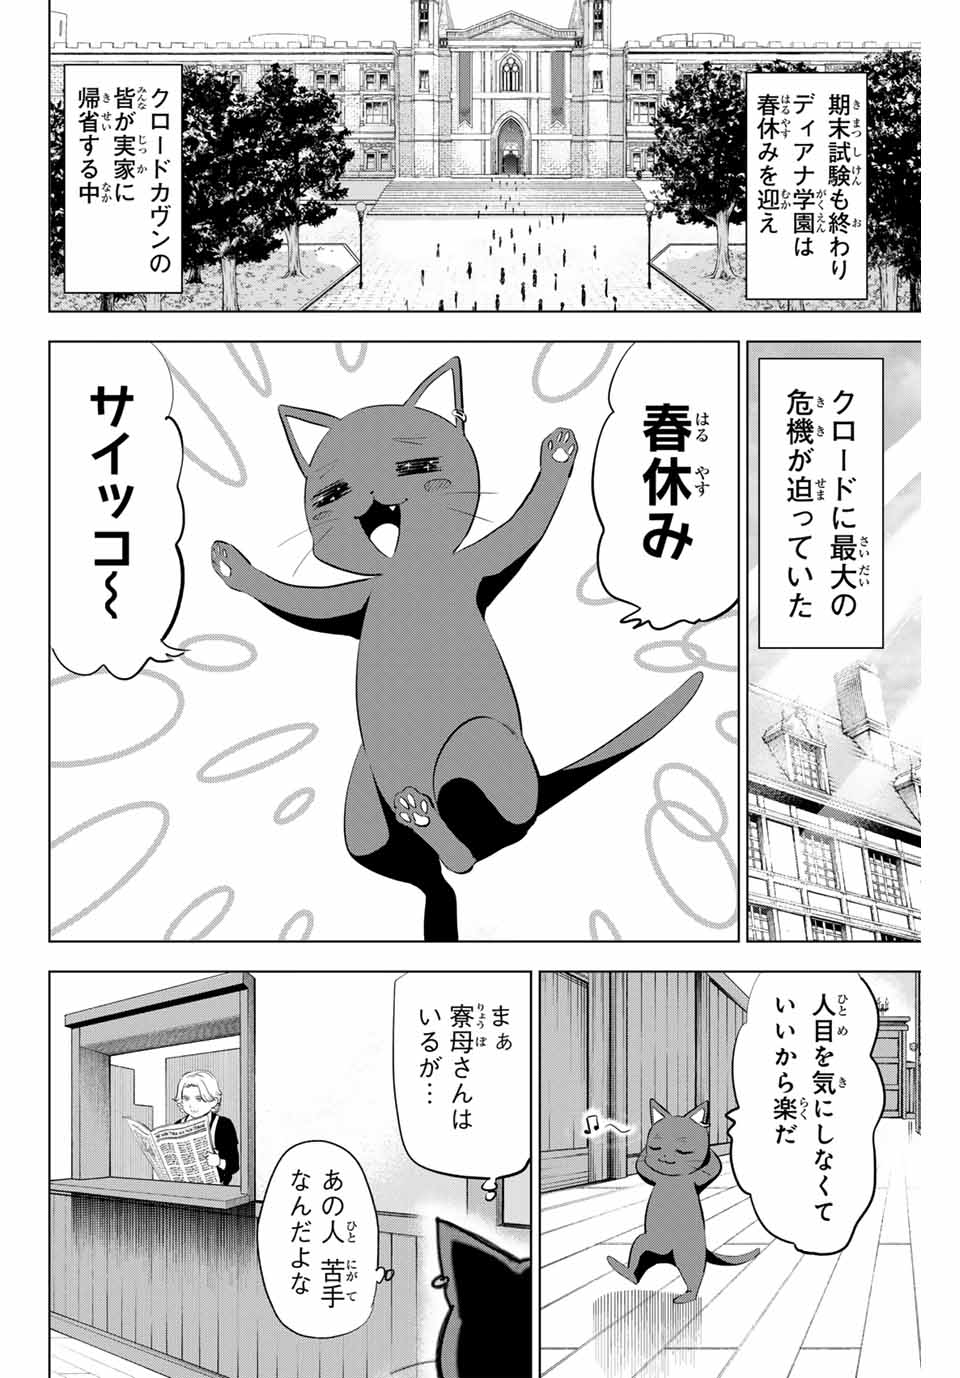 Kuroneko to Majo no Kyoushitsu - Chapter 61 - Page 2